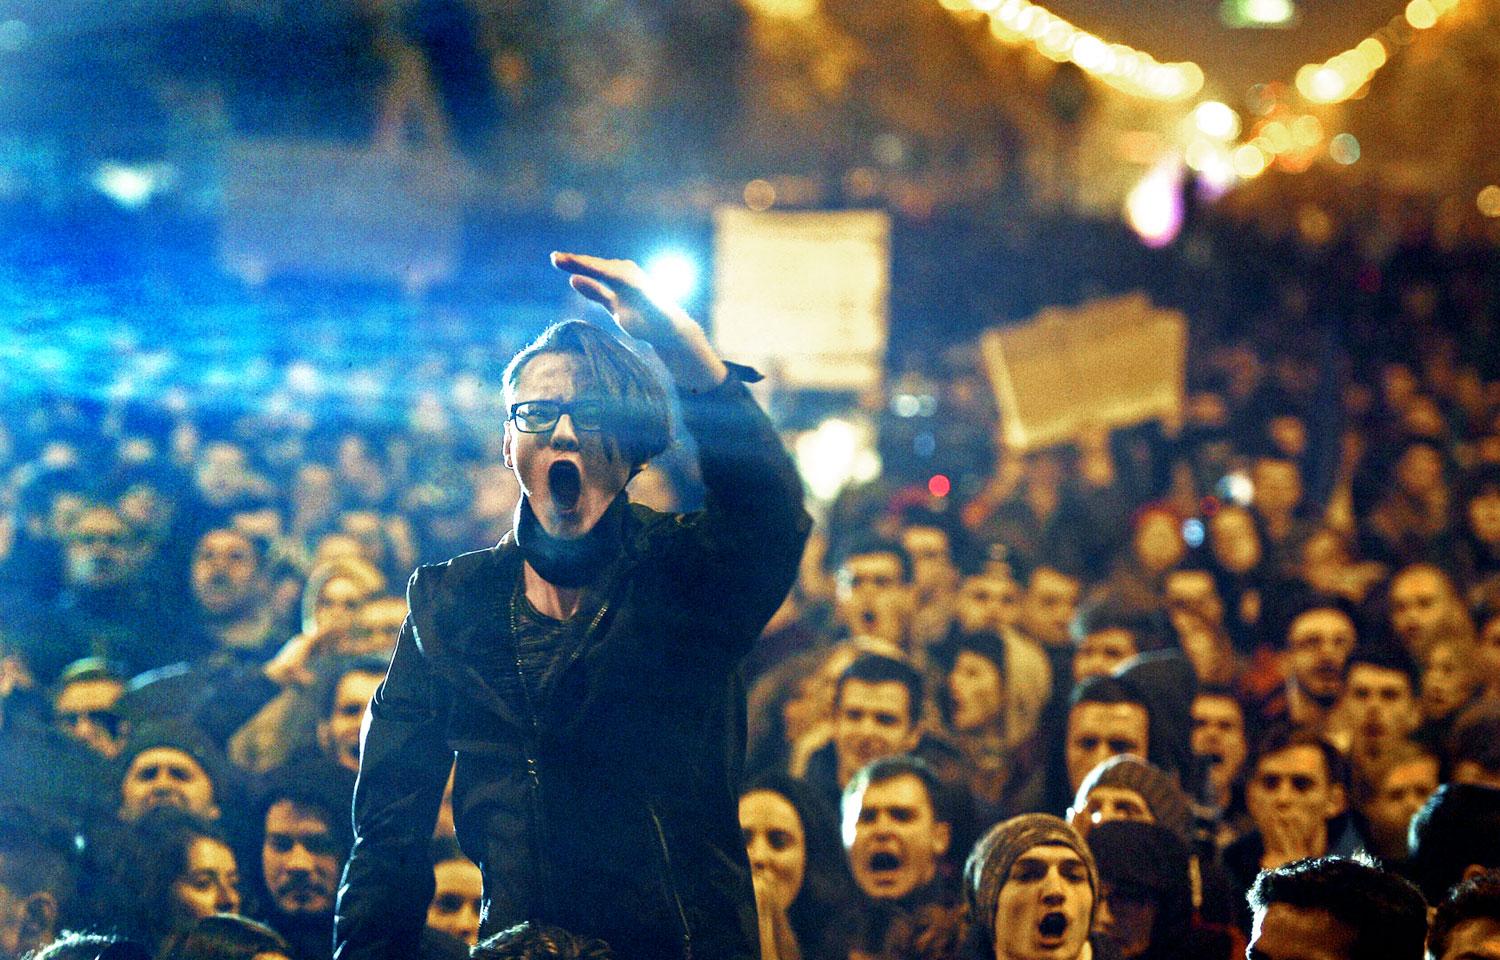 Tüntetés Bukarestben 2015 őszén. Olyan országot akarnak, mint külföldön